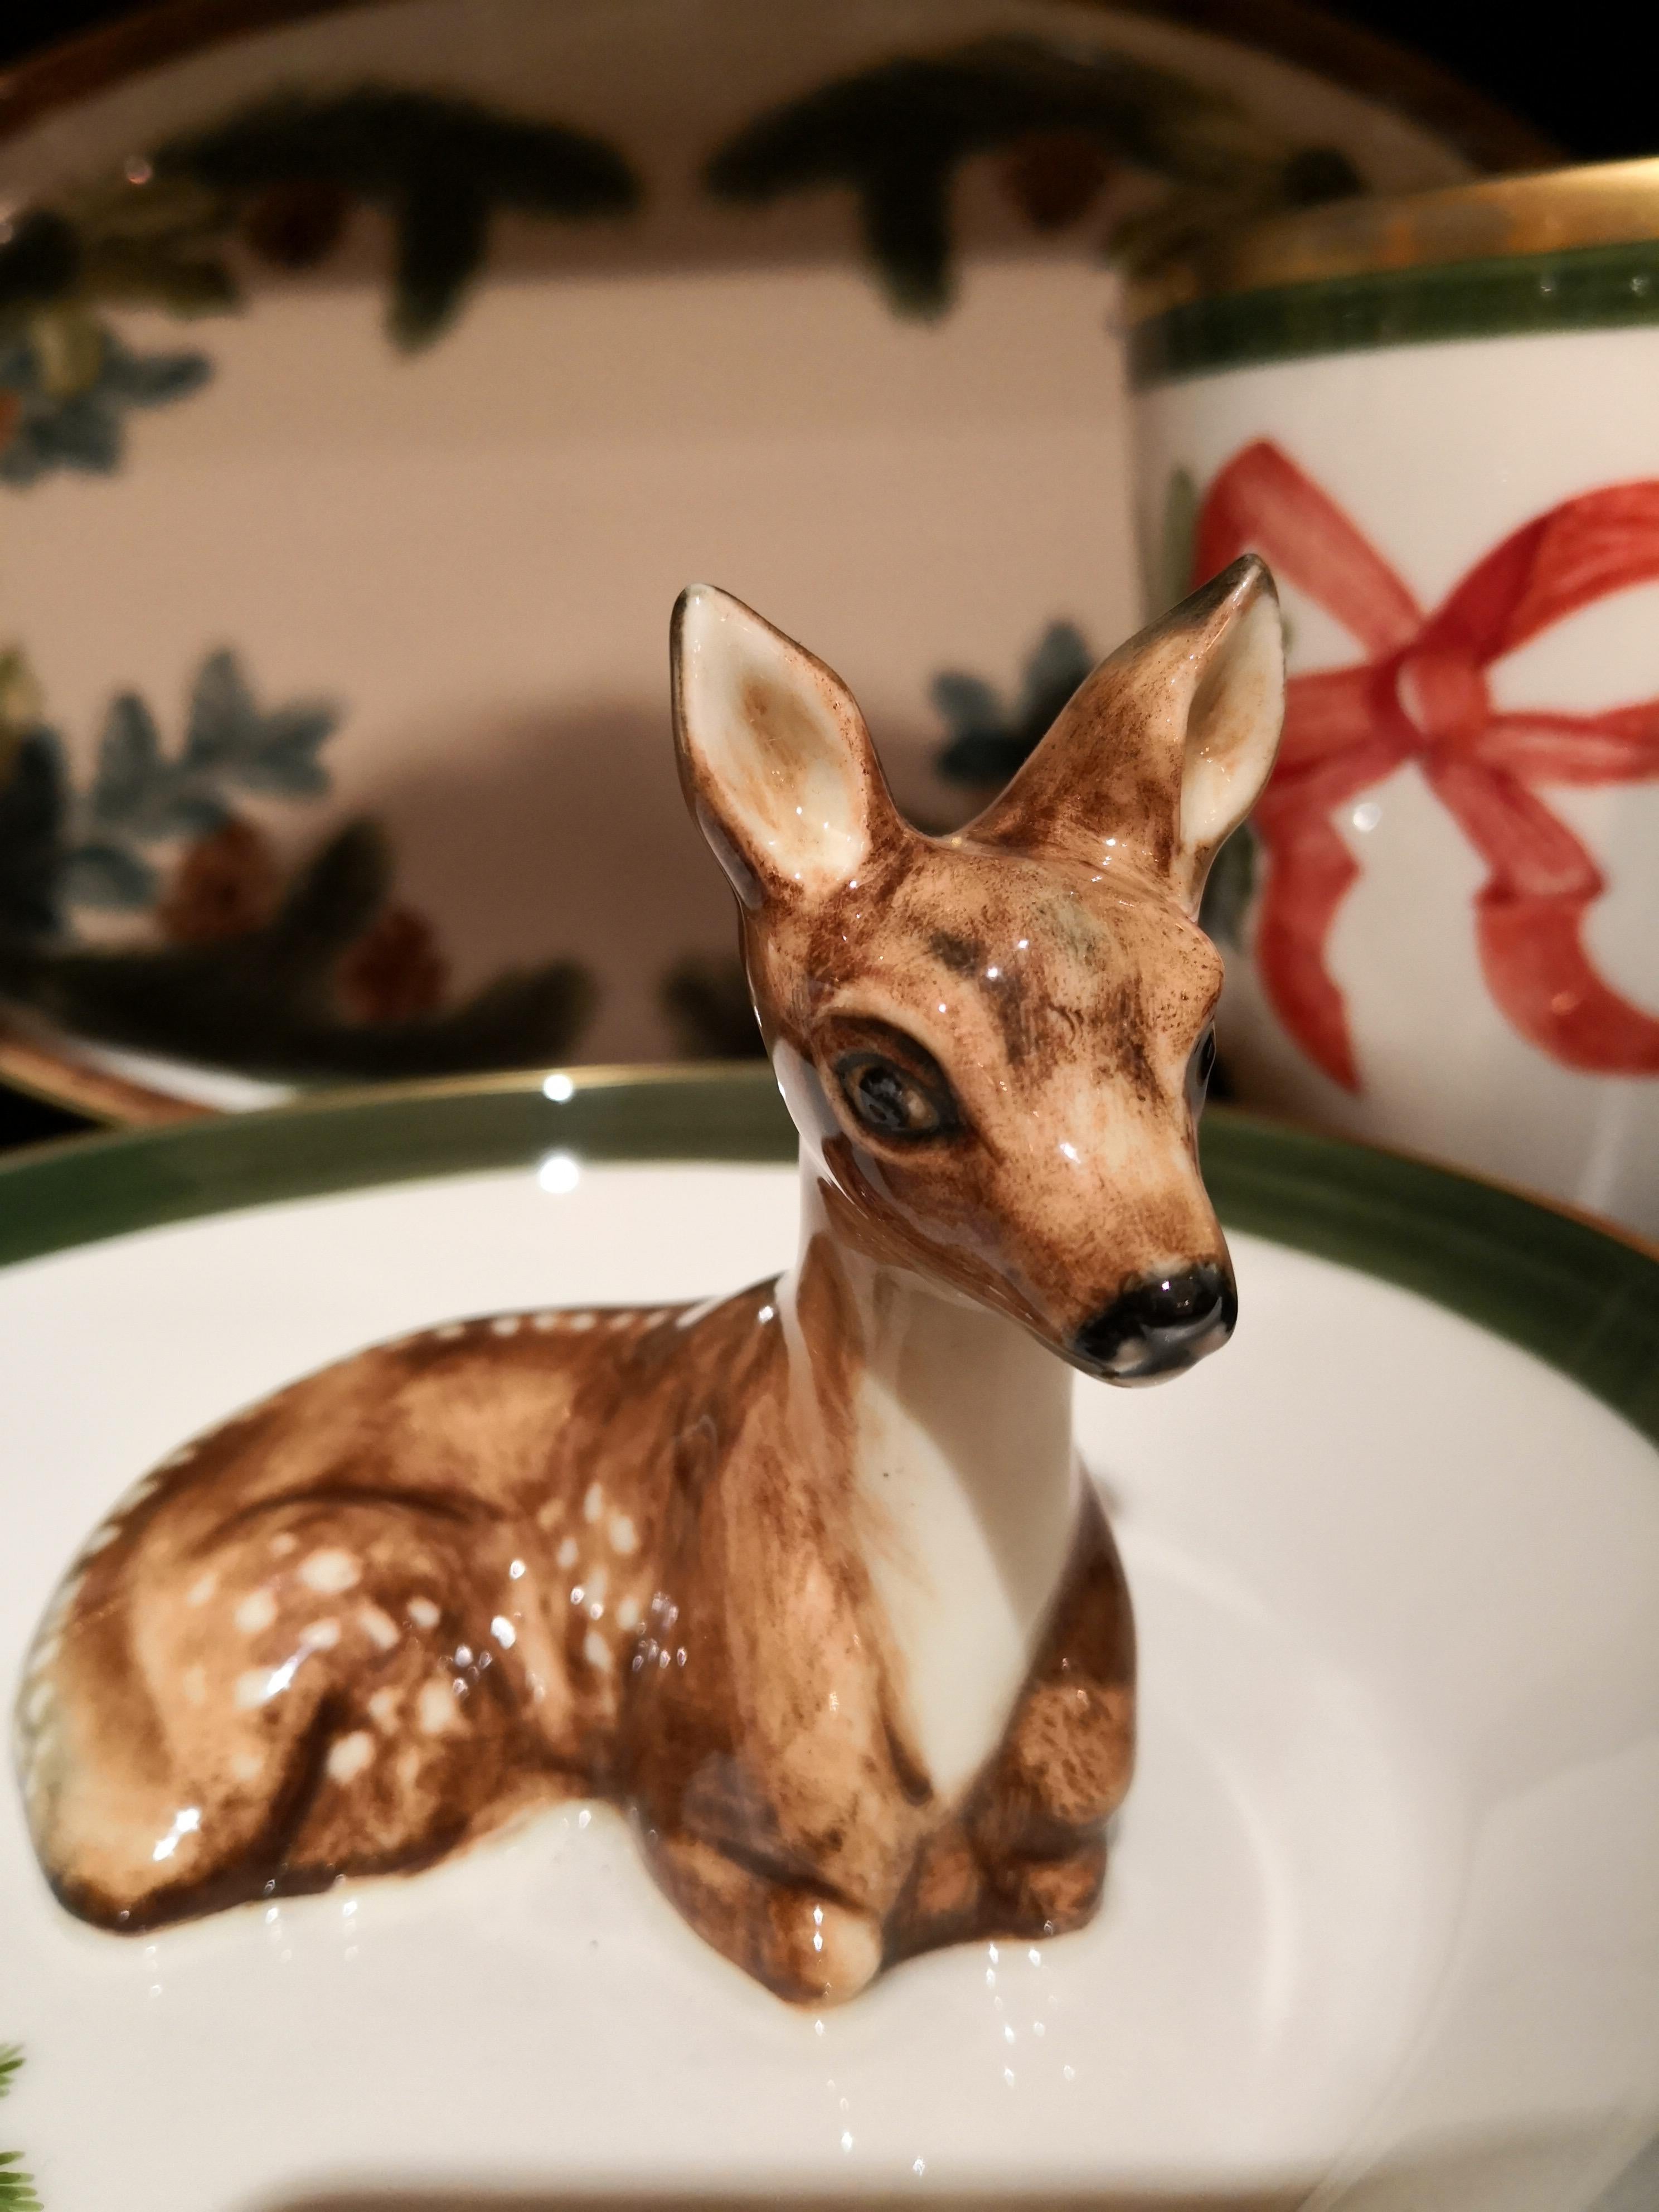 Schwarzwälder handgefertigte Porzellanschale mit einer freihändig gemalten naturalistischen Bambi-Figur in Braun im Landhausstil. Das Bambi sitzt in der Mitte der Schale, um Nüsse oder Süßigkeiten zu dekorieren. Umrandet mit einer feinen